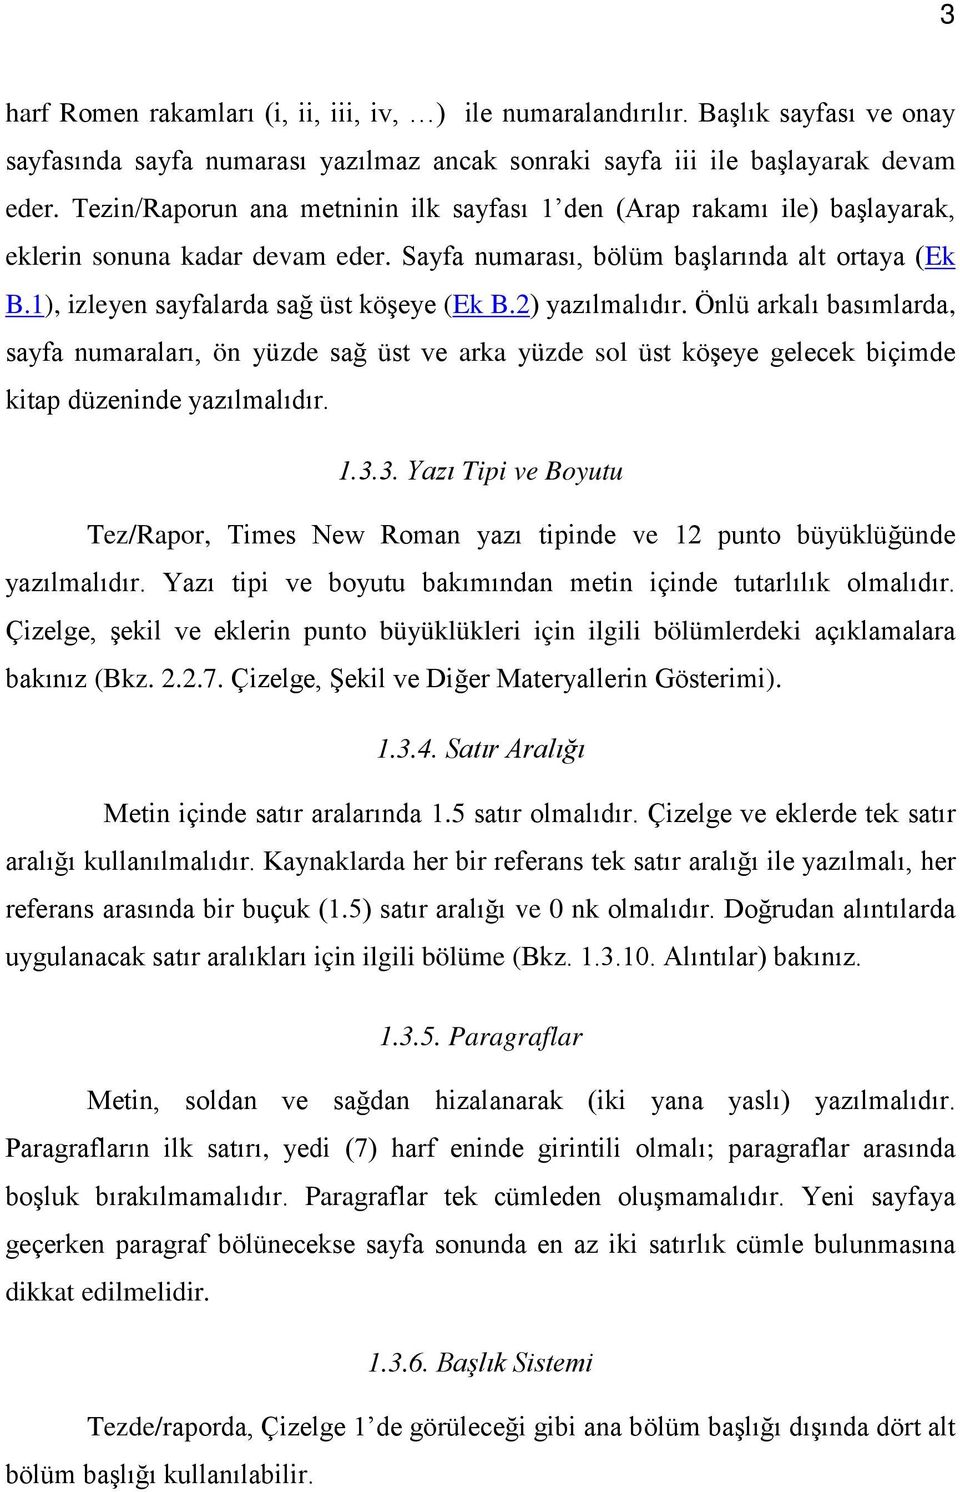 1), izleyen sayfalarda sağ üst köşeye (Ek B.2) yazılmalıdır. Önlü arkalı basımlarda, sayfa numaraları, ön yüzde sağ üst ve arka yüzde sol üst köşeye gelecek biçimde kitap düzeninde yazılmalıdır. 1.3.